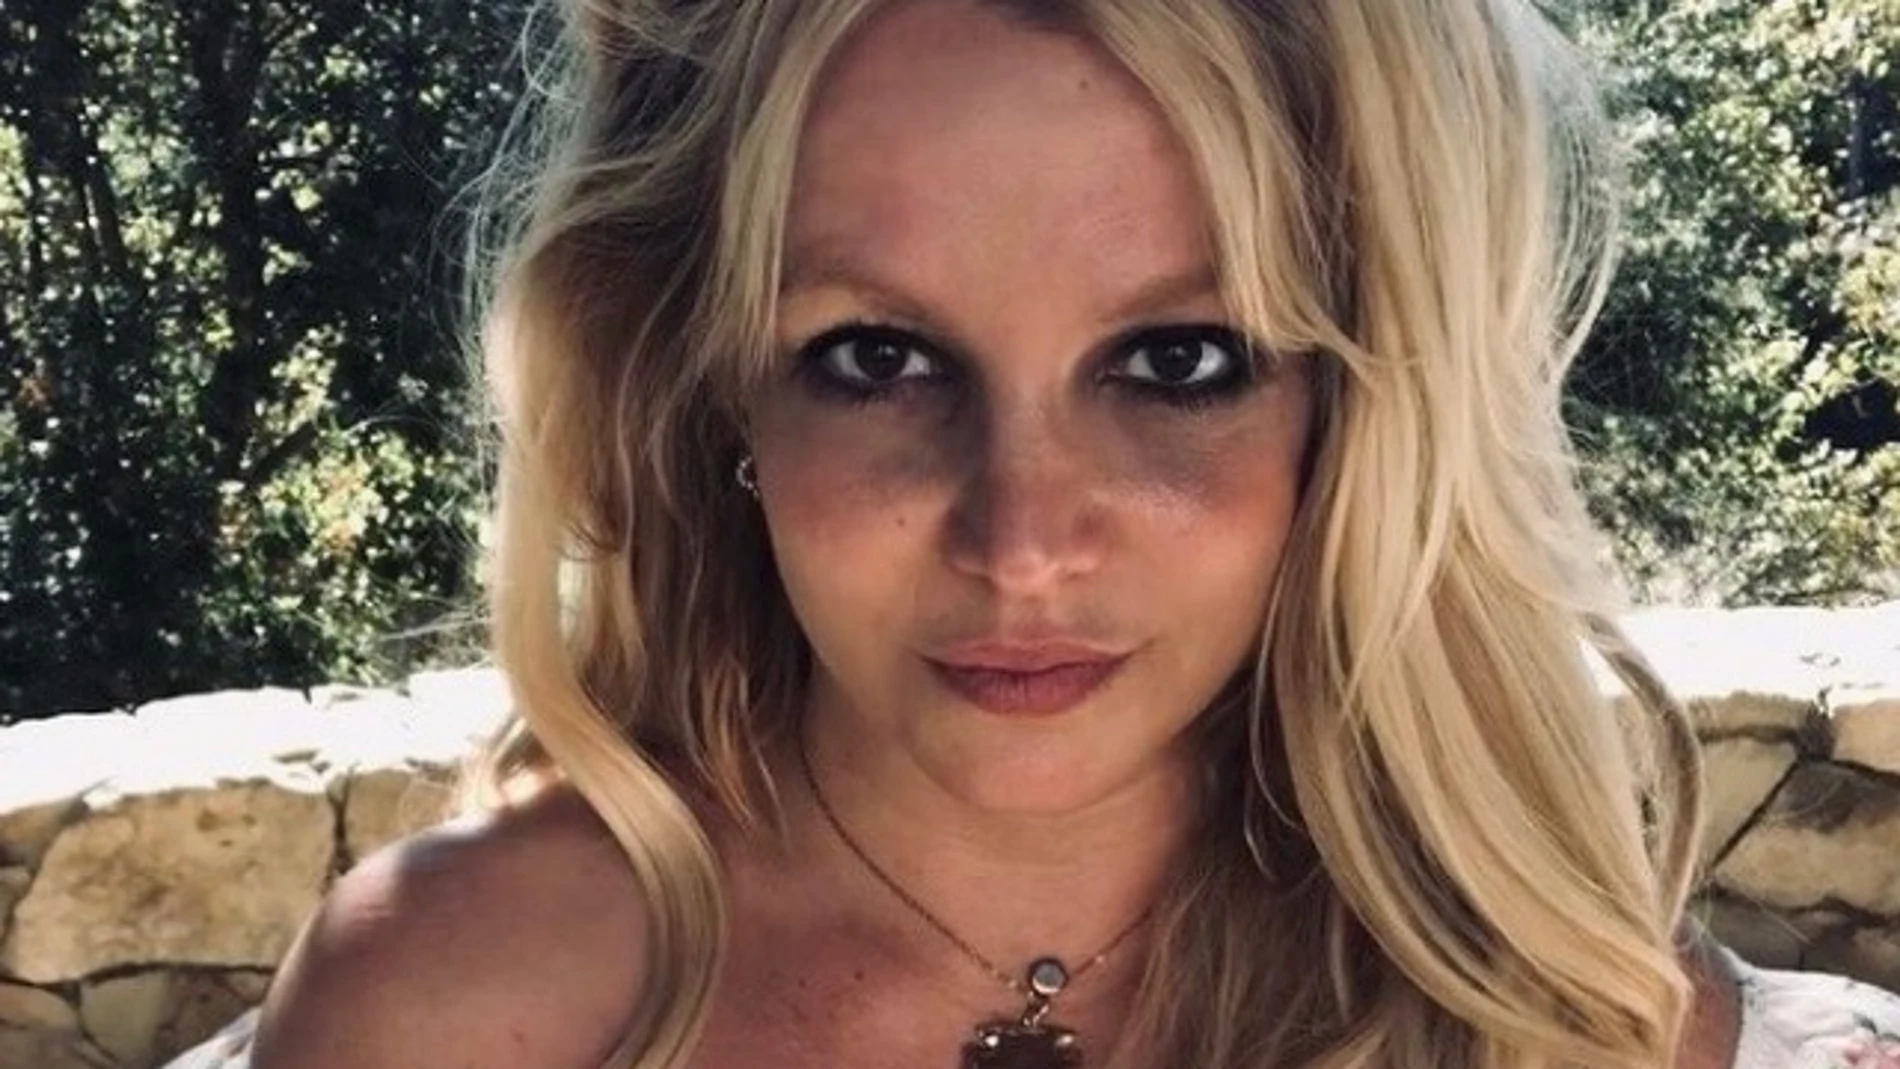 Una de las últimas fotografías publicadas por Britney Spears en Instagram